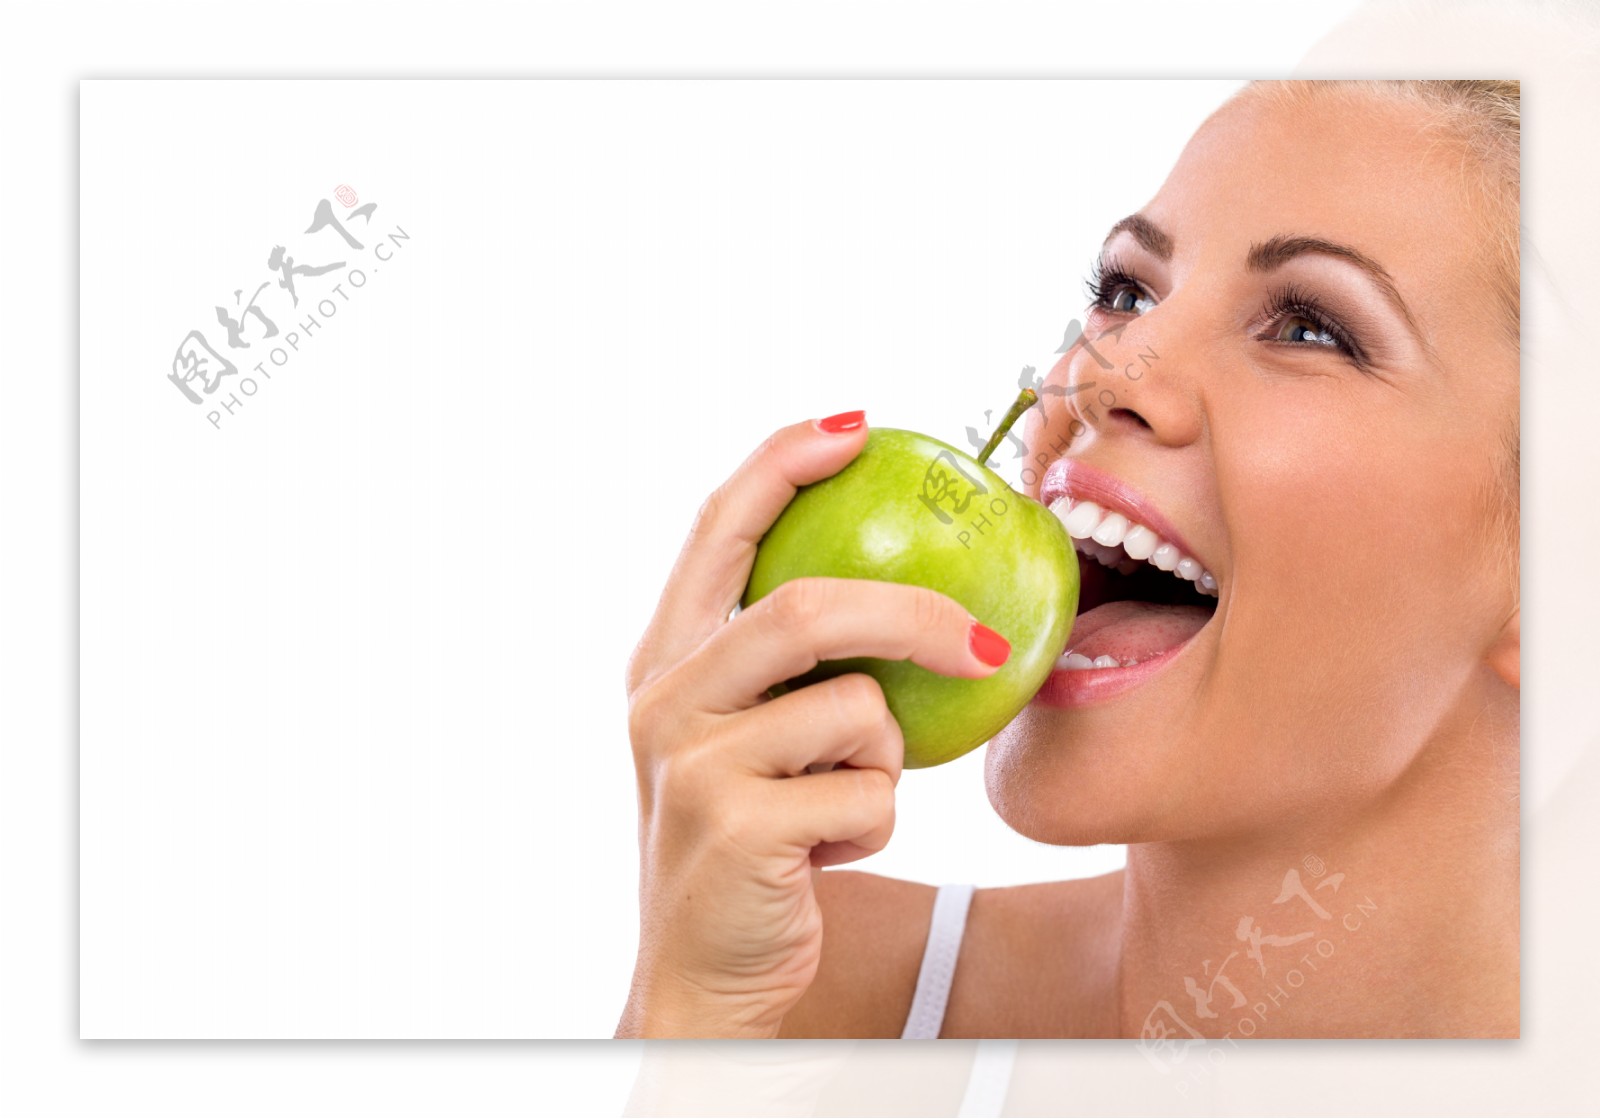 美女吃苹果图片